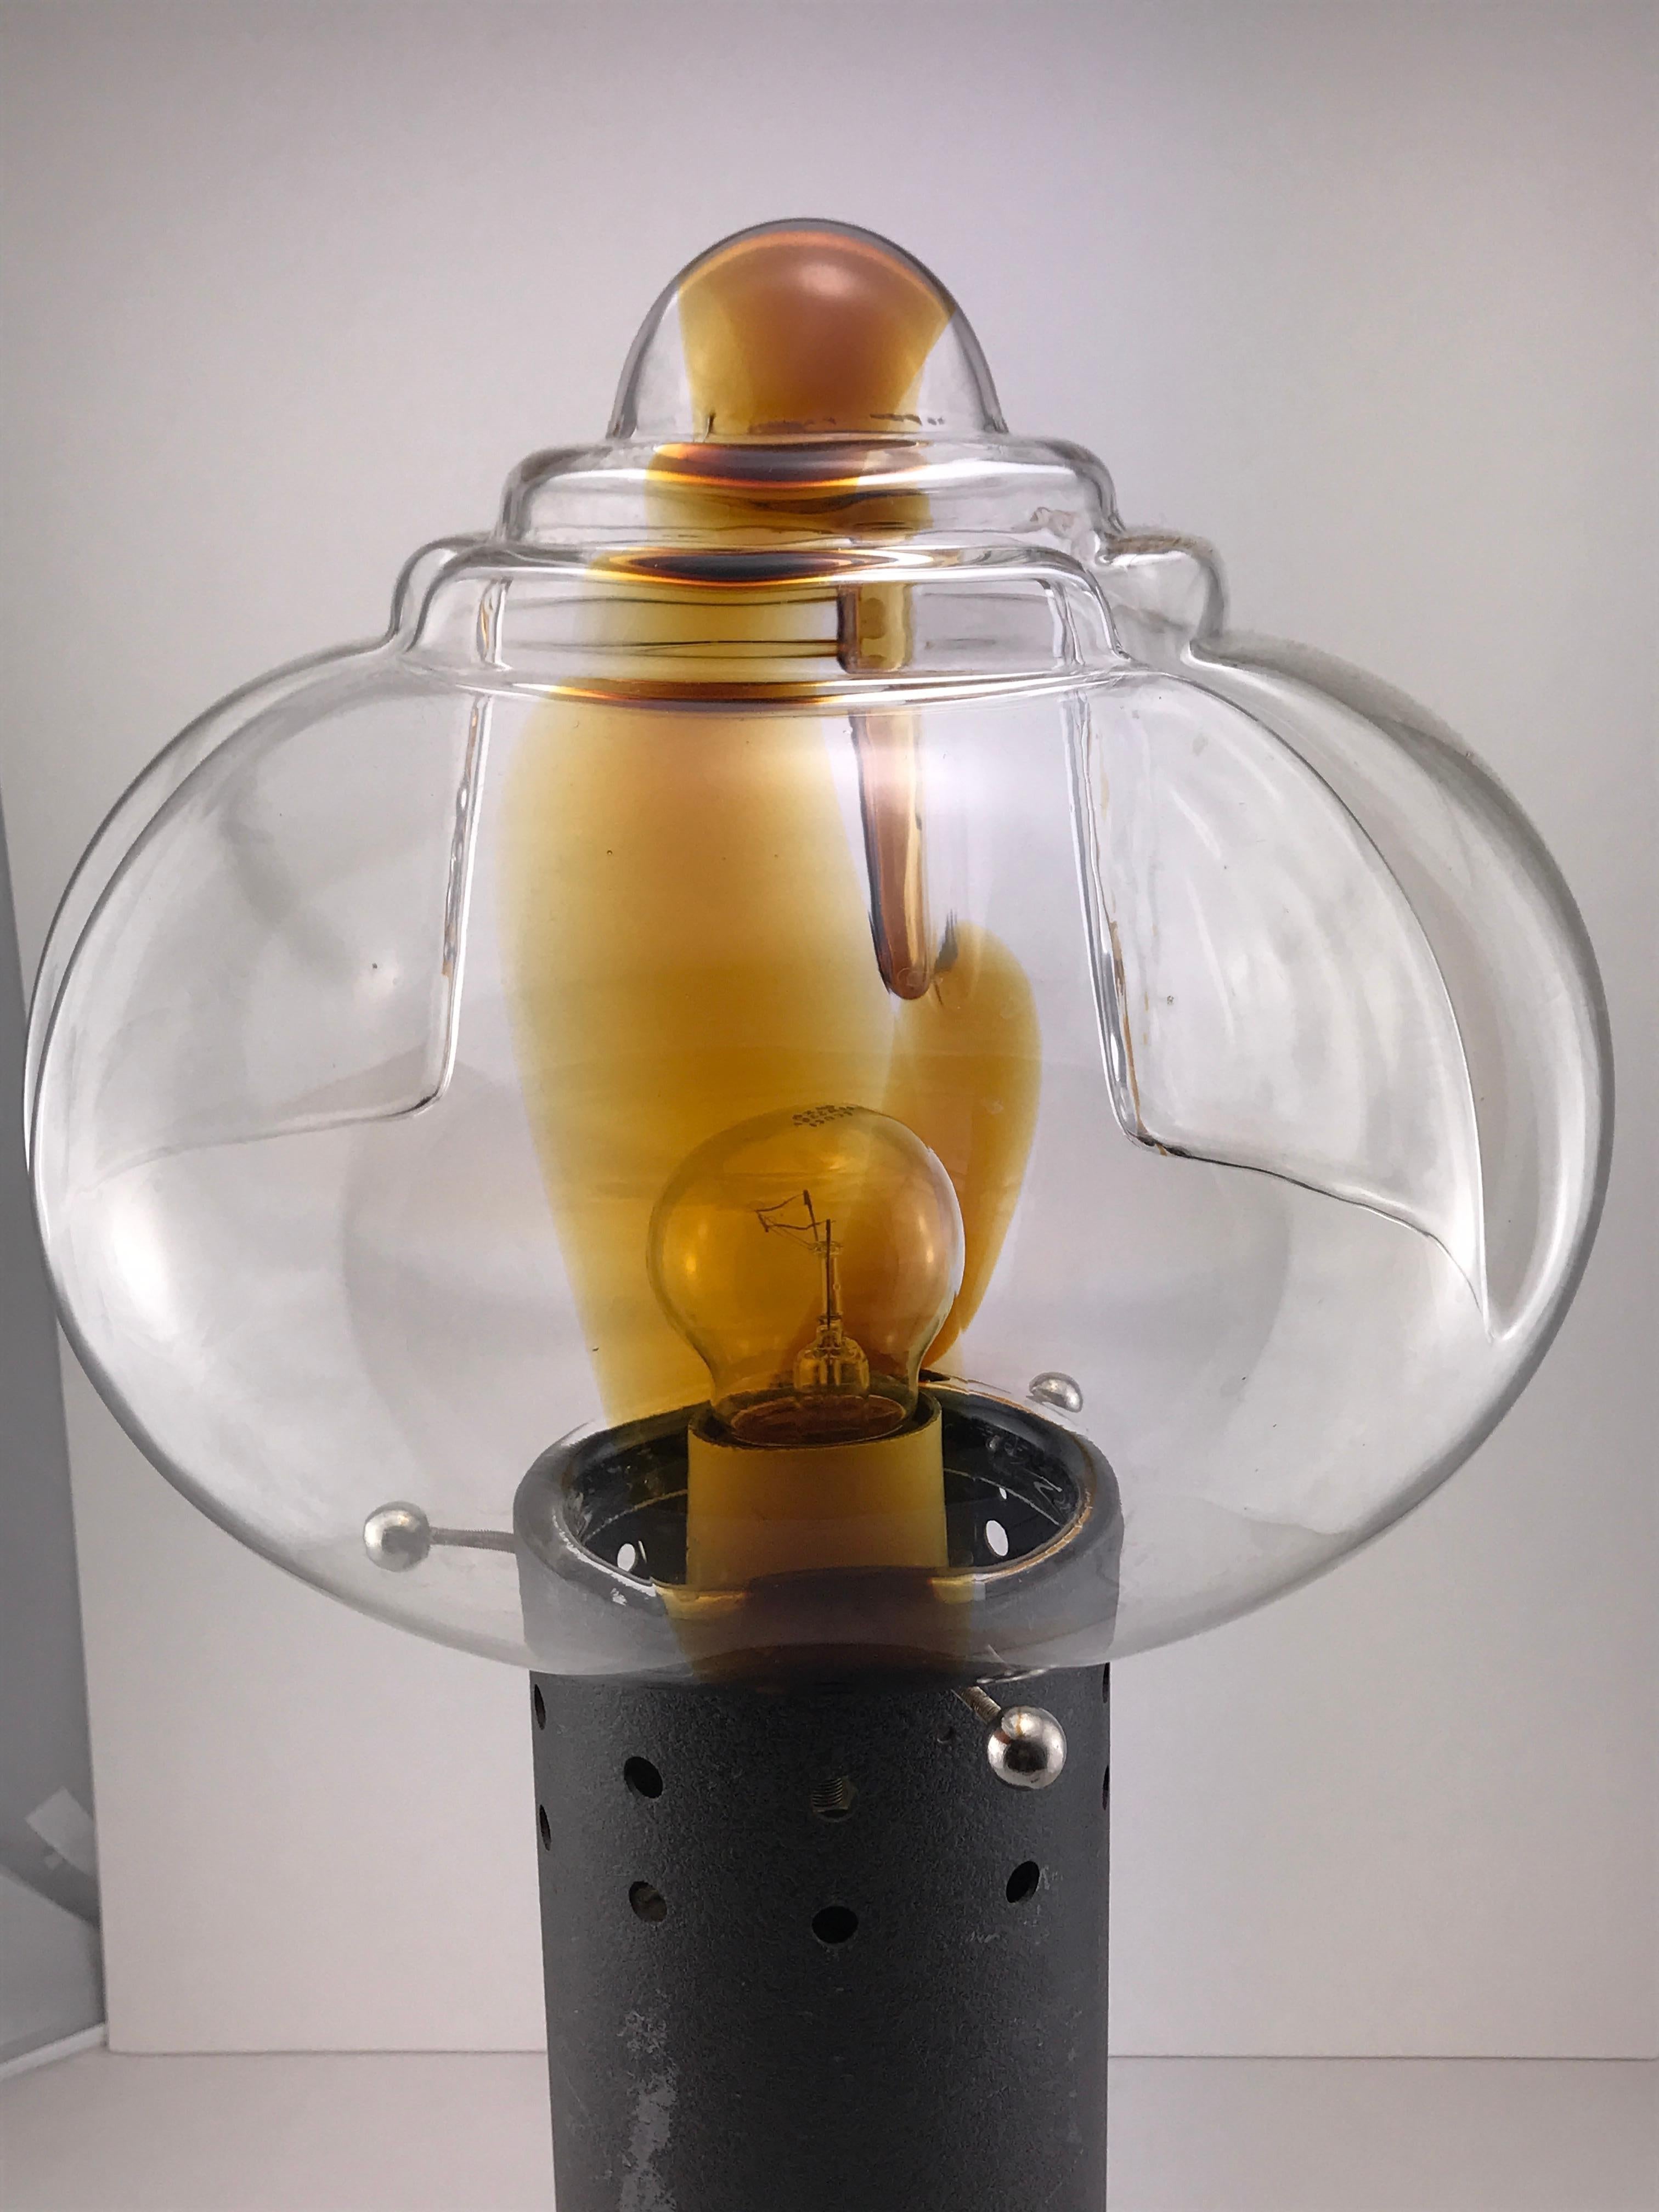 lampe italienne des années 1960 par Toni Zuccheri pour Mazzega Murano, base en métal et globe en verre de Murano brun.
Bon état compte tenu de l'âge.
Parfait état de fonctionnement.